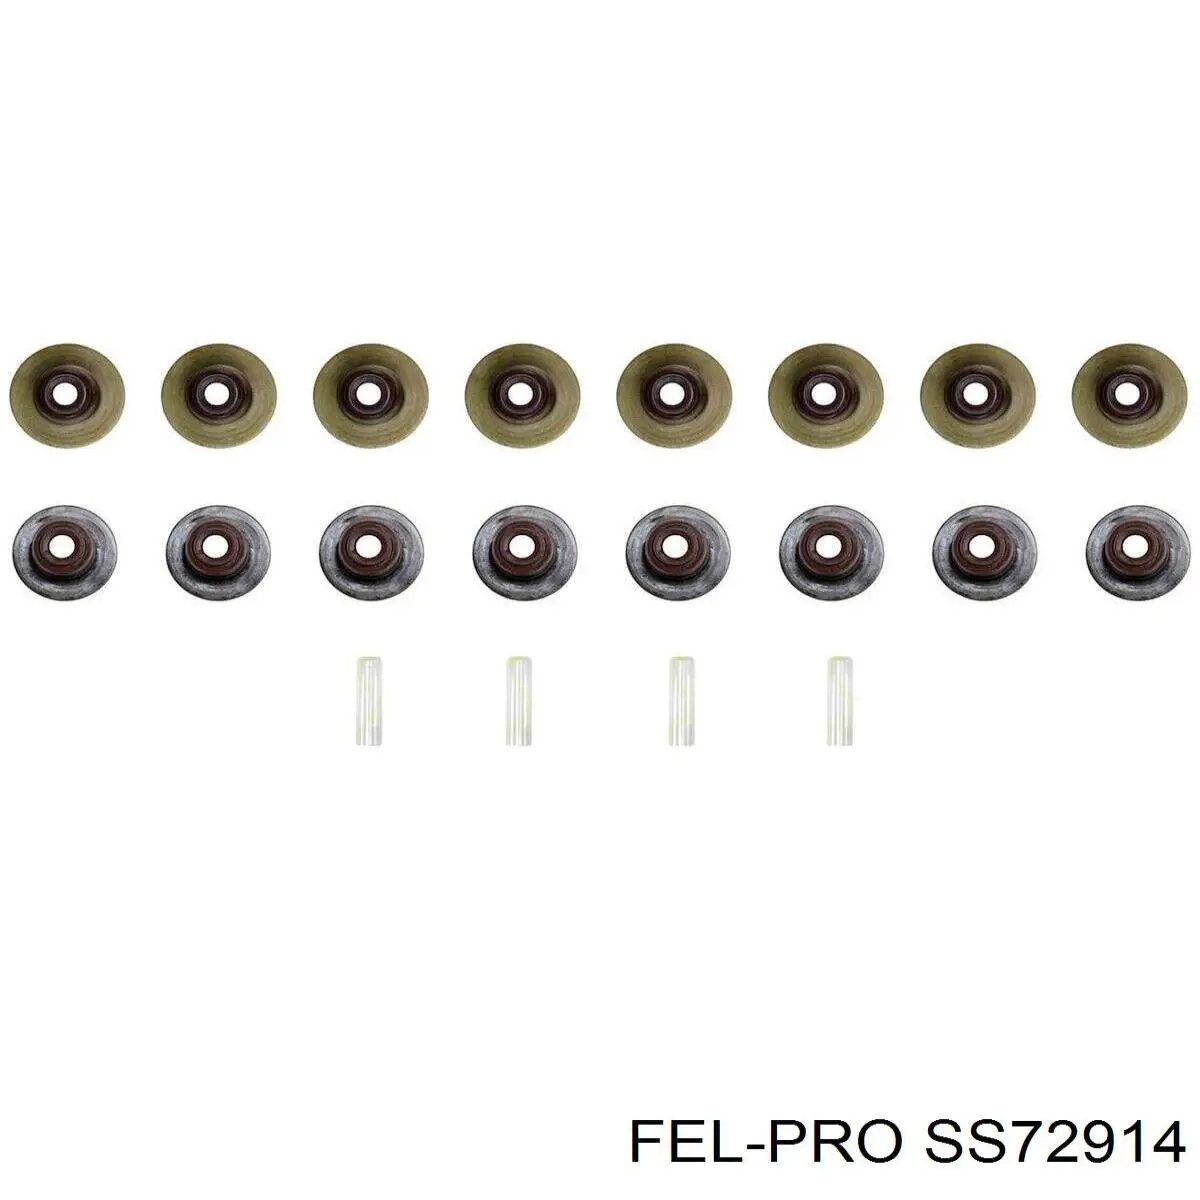 Сальник клапана (маслосъемный), впуск/выпуск, комплект на мотор Fel-pro SS72914